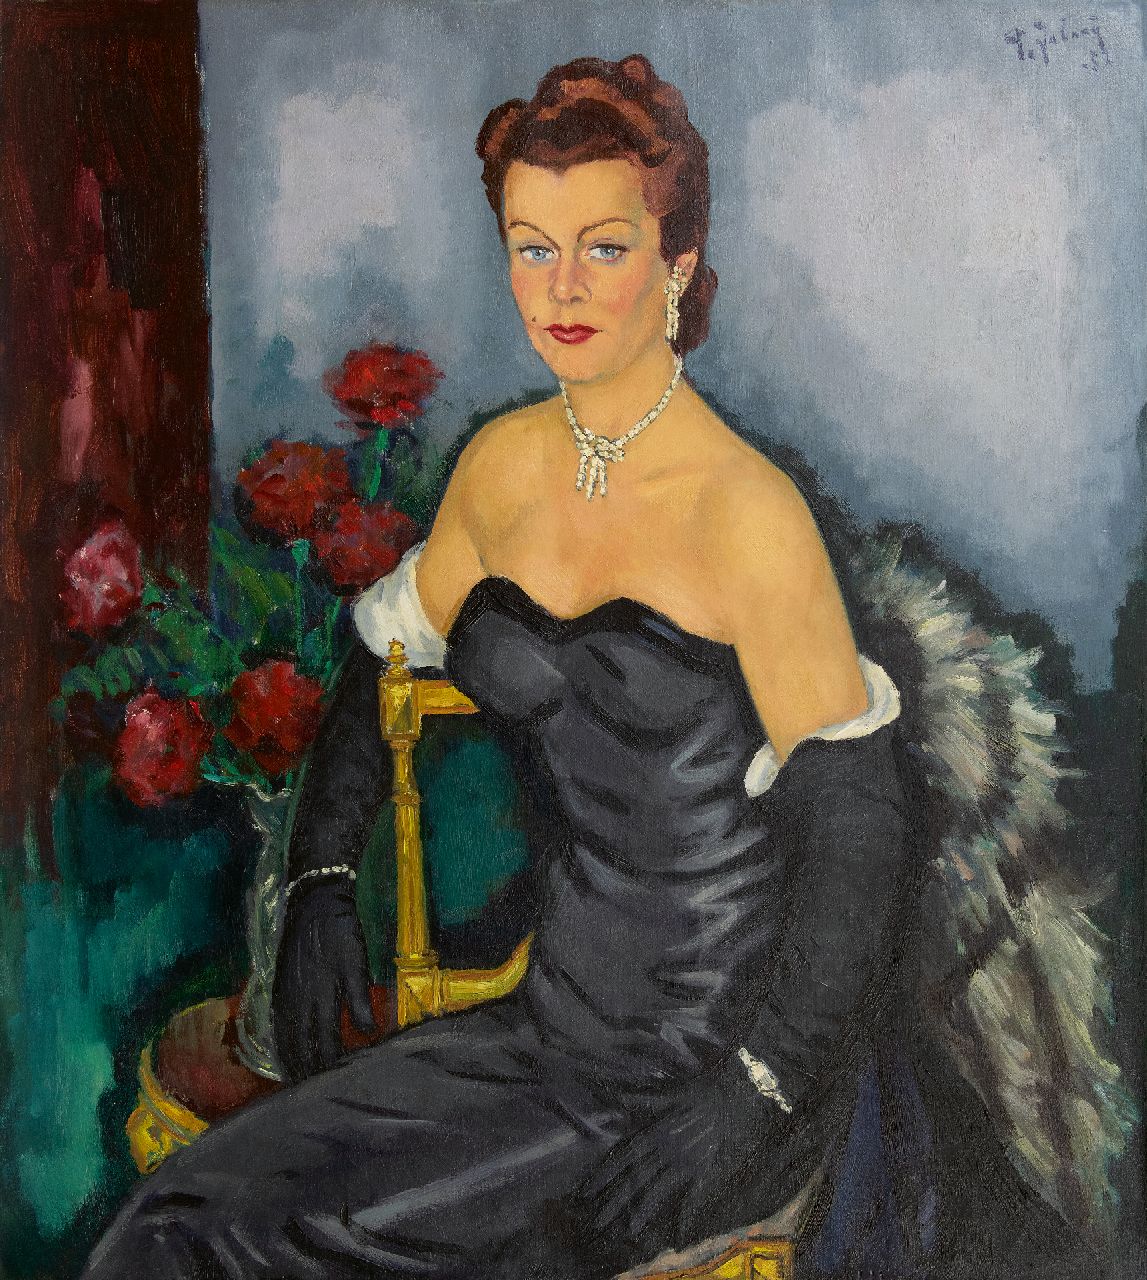 Jabaaij P.  | Piet 'Pleun' Jabaaij | Schilderijen te koop aangeboden | Portret van een vrouw in avondkleding, olieverf op doek 100,0 x 99,8 cm, gesigneerd rechtsboven en gedateerd '52, zonder lijst